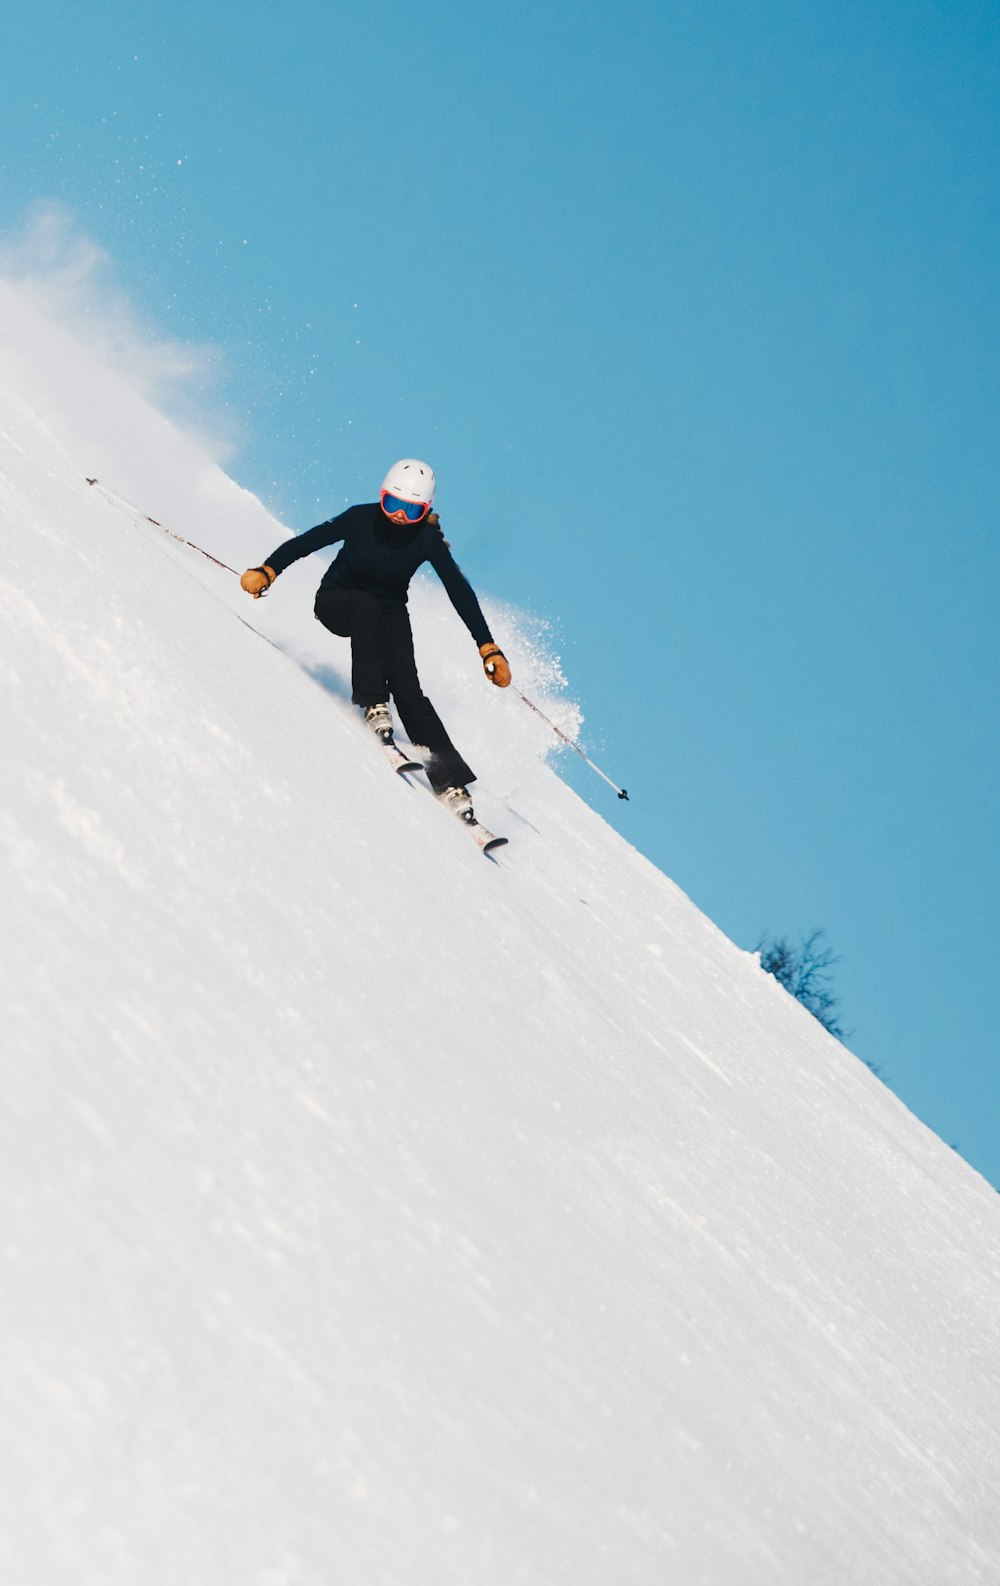 En images : notre sélection d'équipements de ski - Challenges